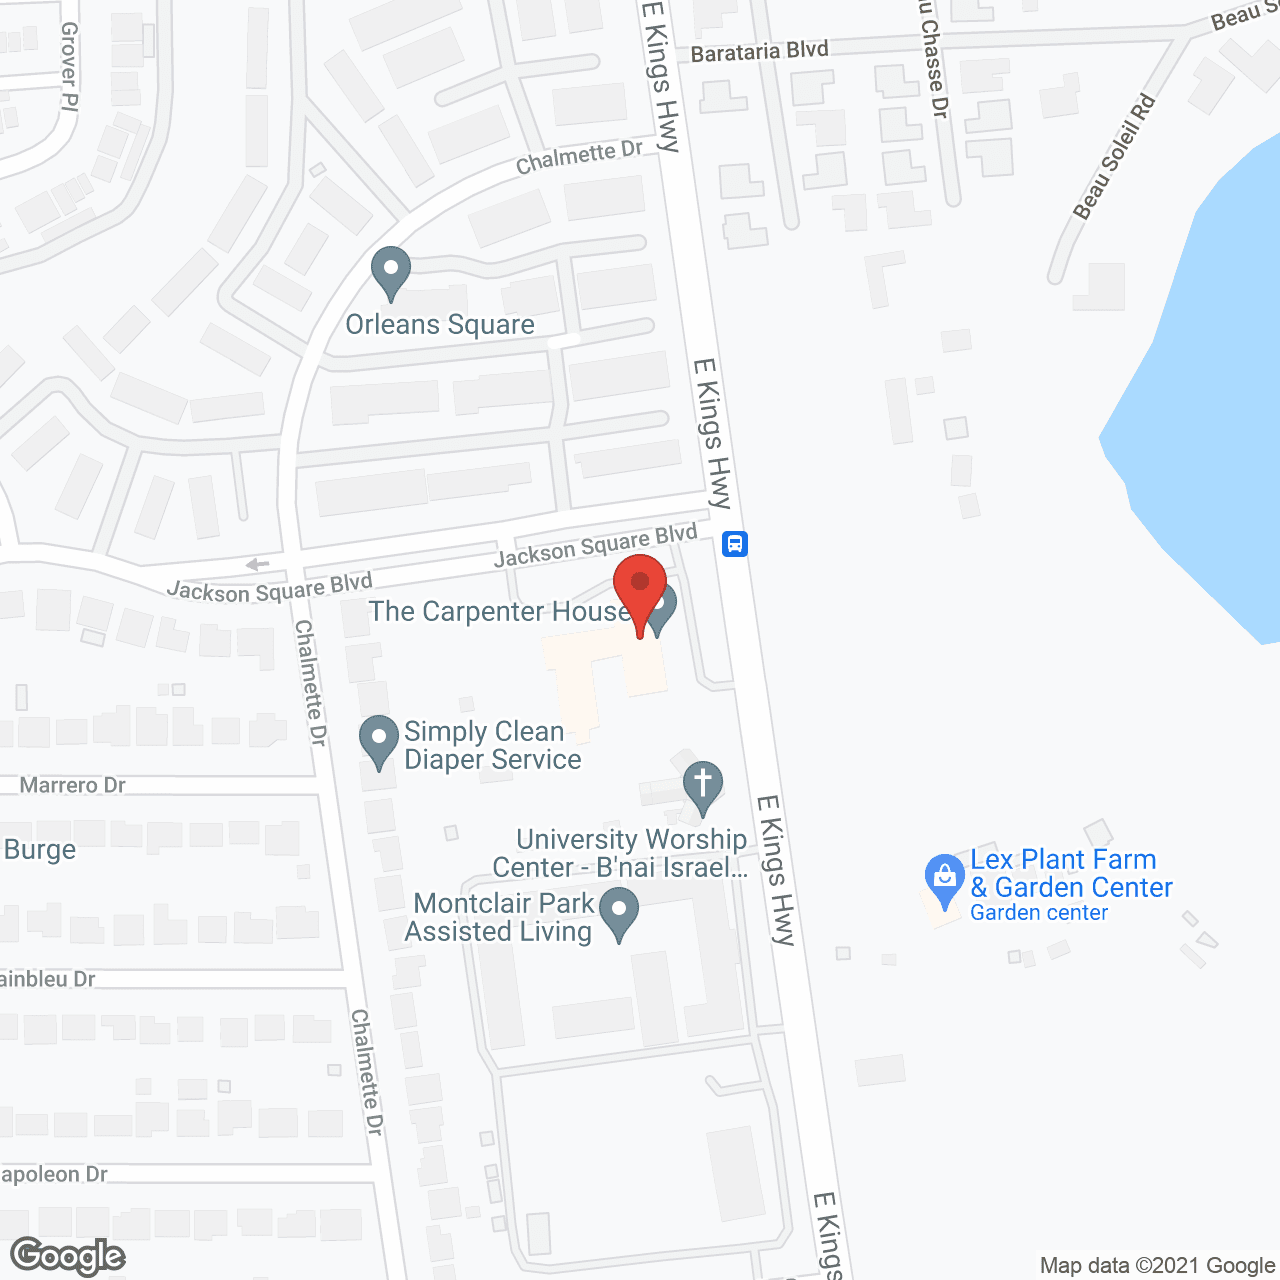 The Terrace of Shreveport in google map